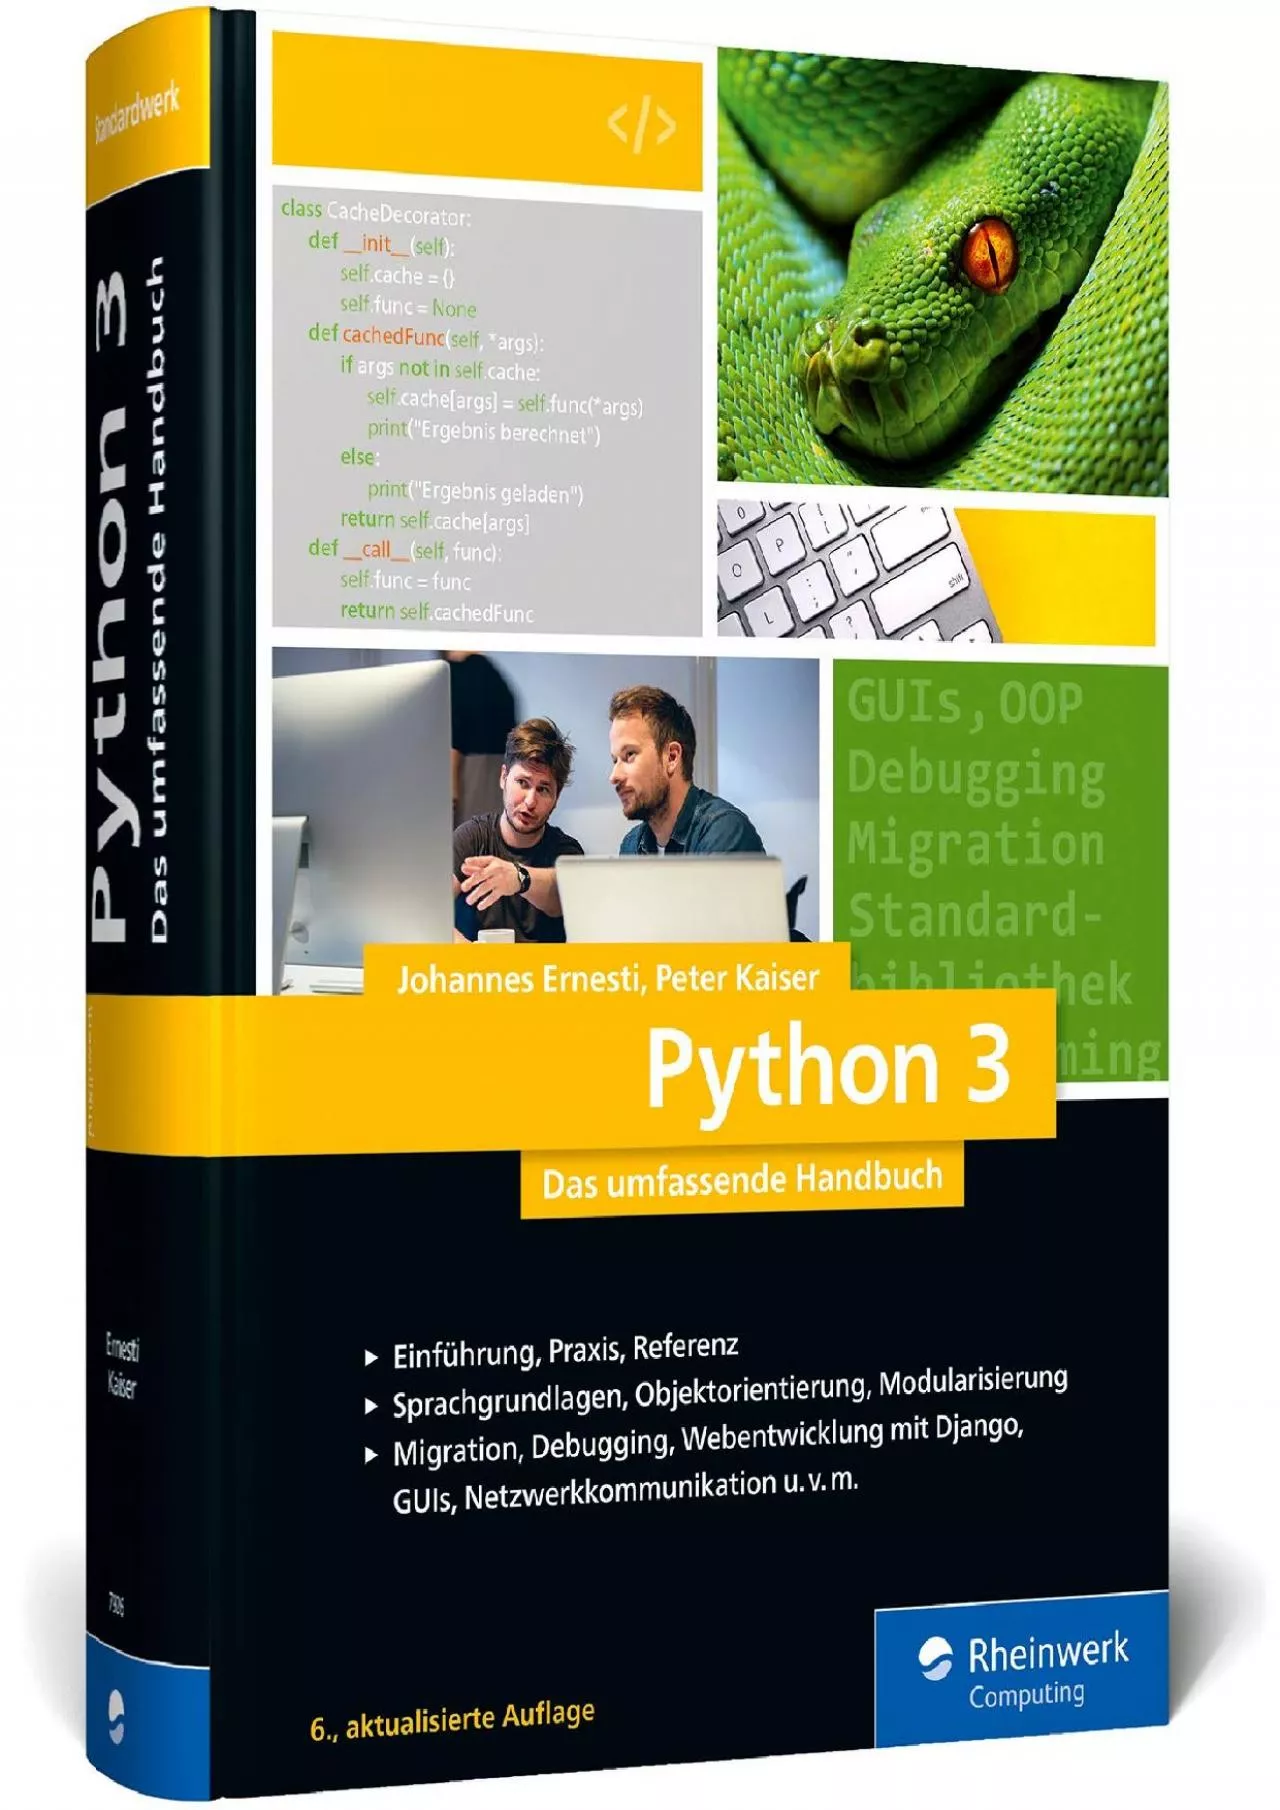 [DOWLOAD]-Python 3: Das umfassende Handbuch: Über 1.000 Seiten Sprachgrundlagen, Objektorientierte